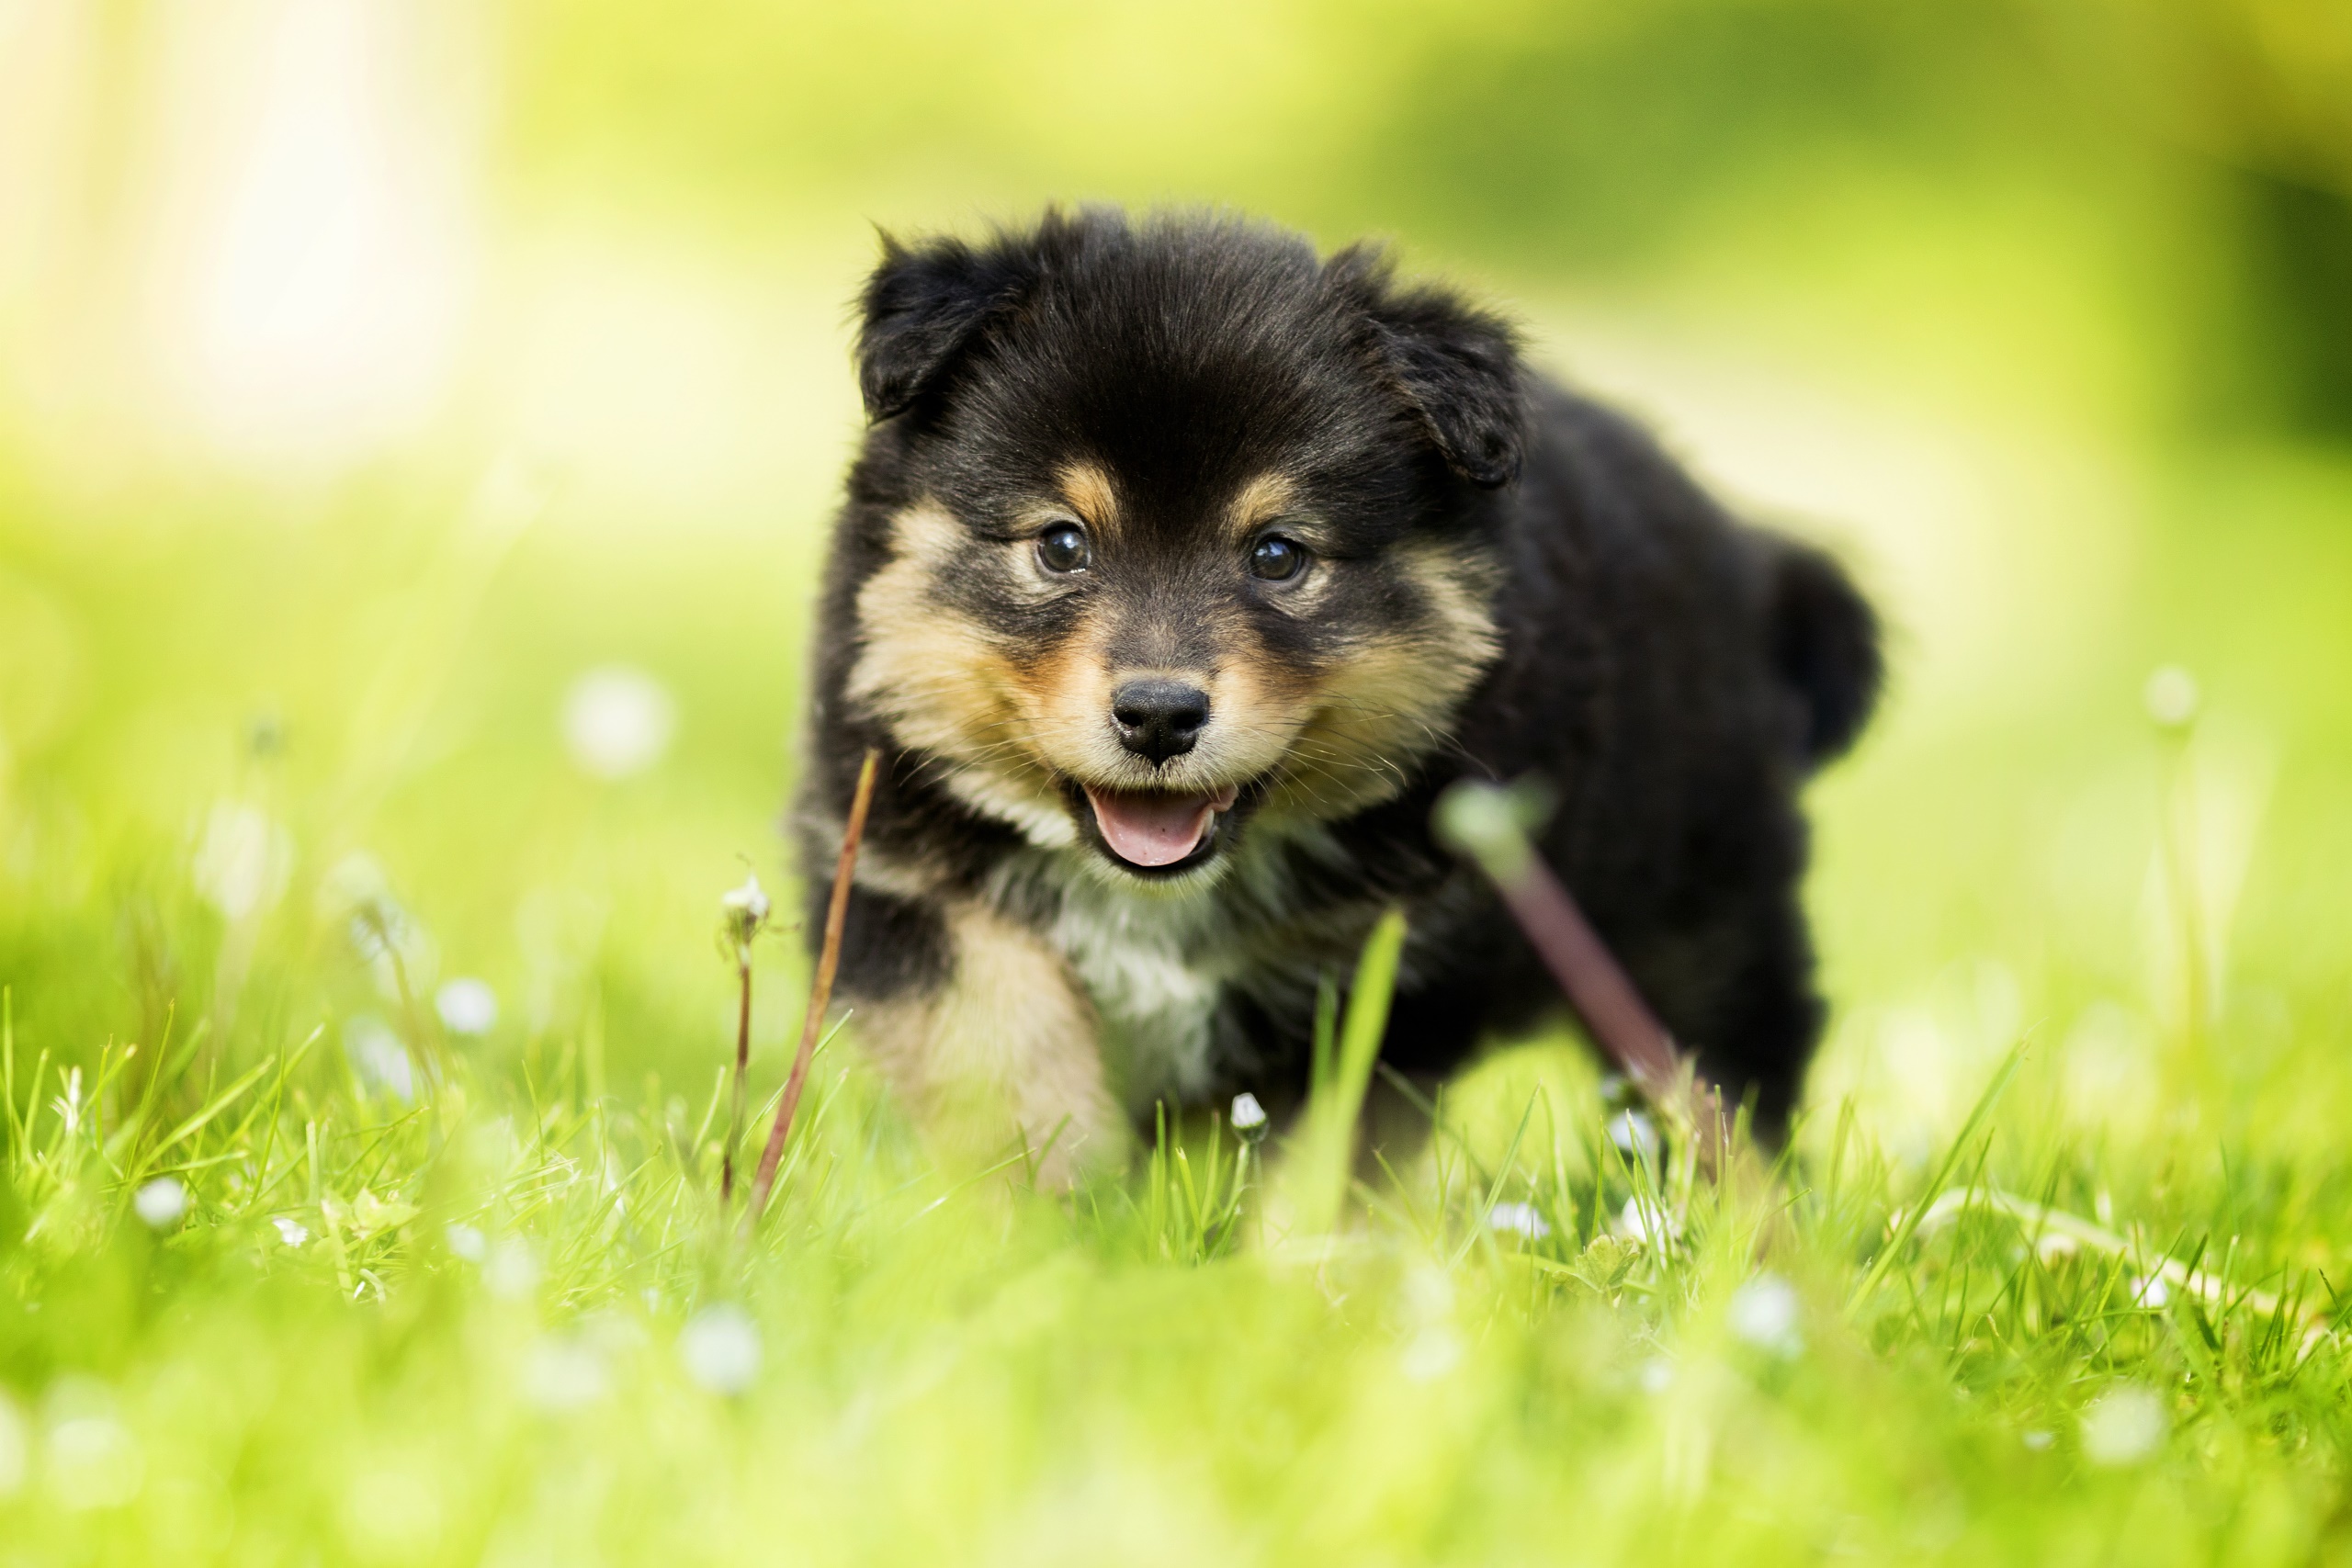 General 2560x1707 dog animals puppies pet closeup outdoors grass